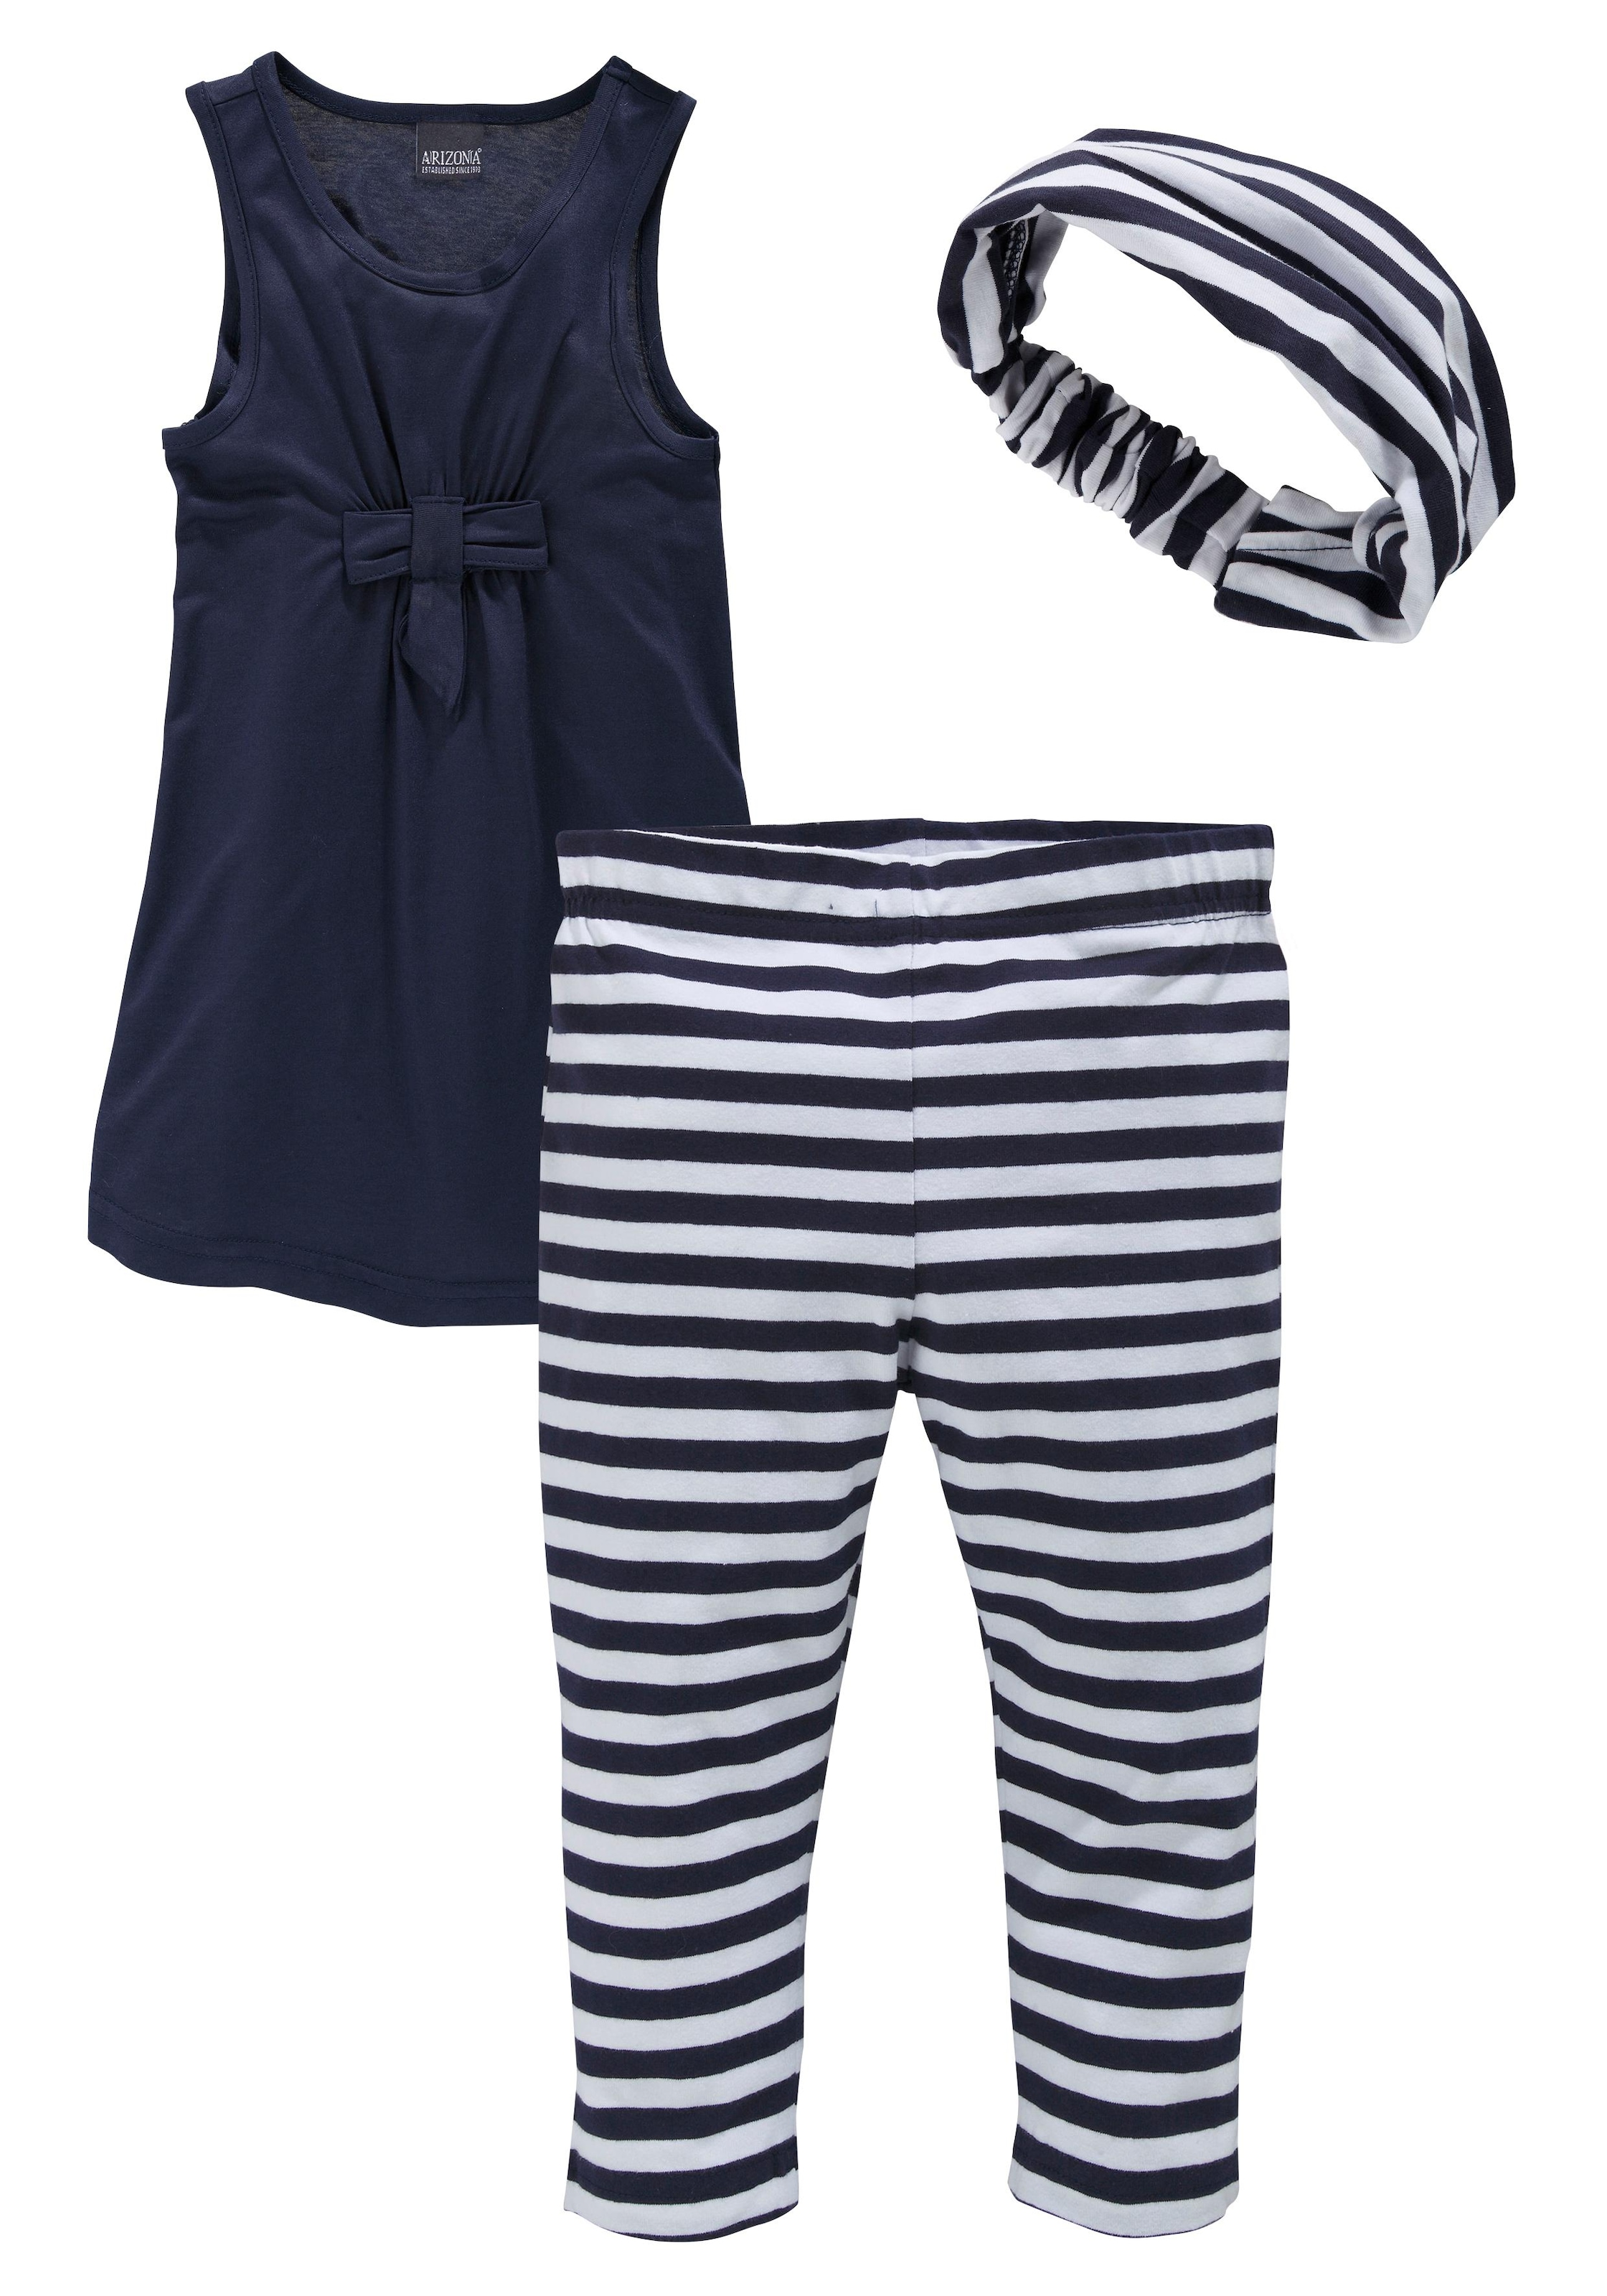 KIDSWORLD Kleid, Leggings & Haarband, (Set, 3 tlg.), Capri und Haarband maritim geringelt